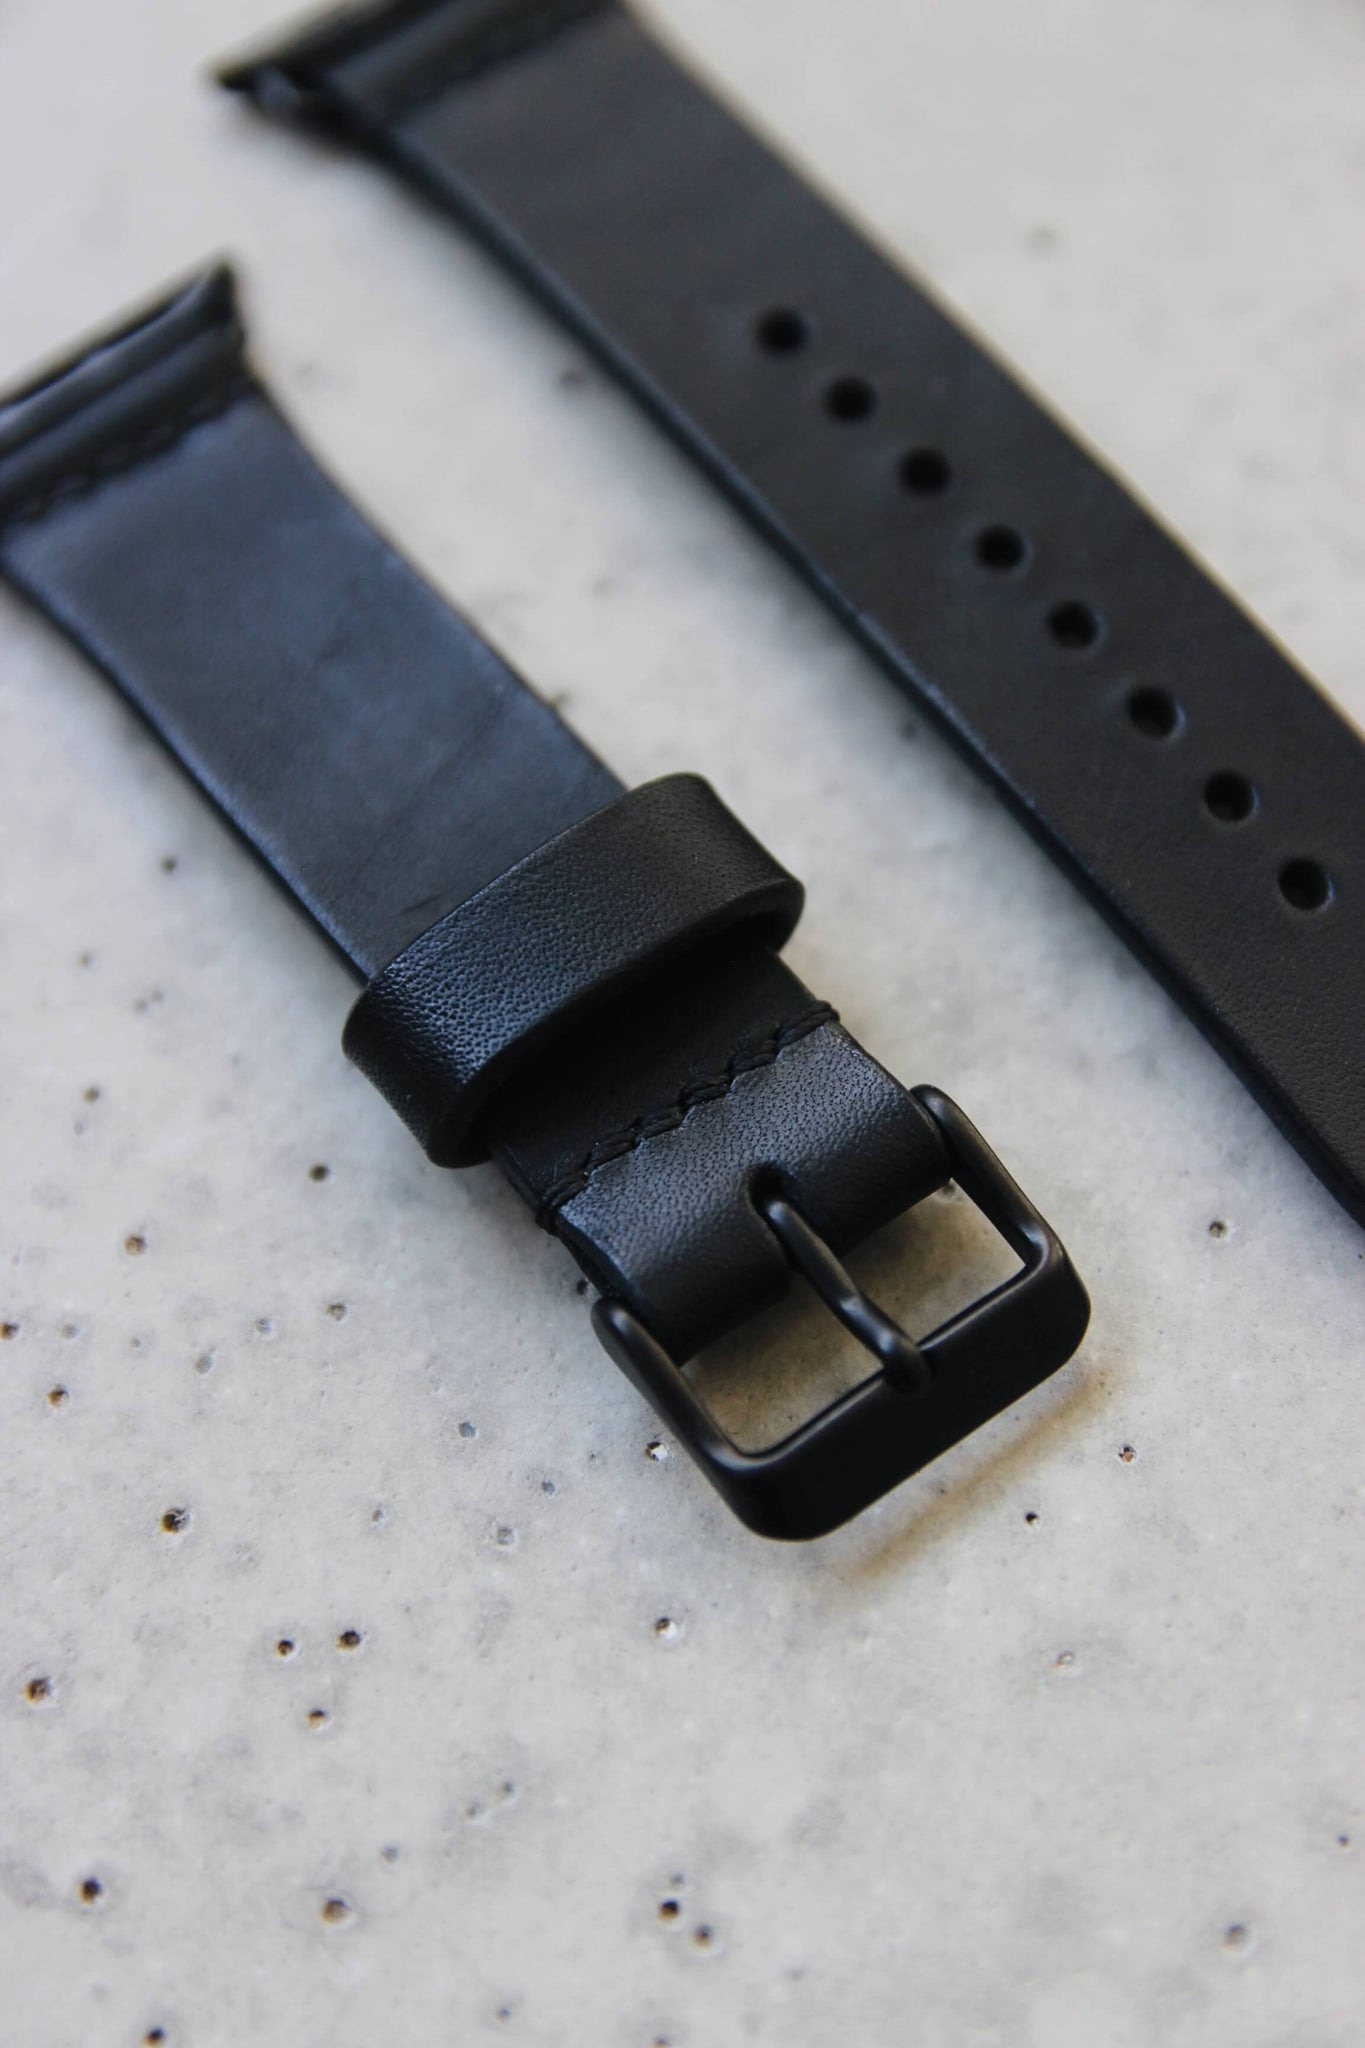 Apple Watch Lederband in Schwarz in Nahaufnahme auf einem Betonuntergrund.